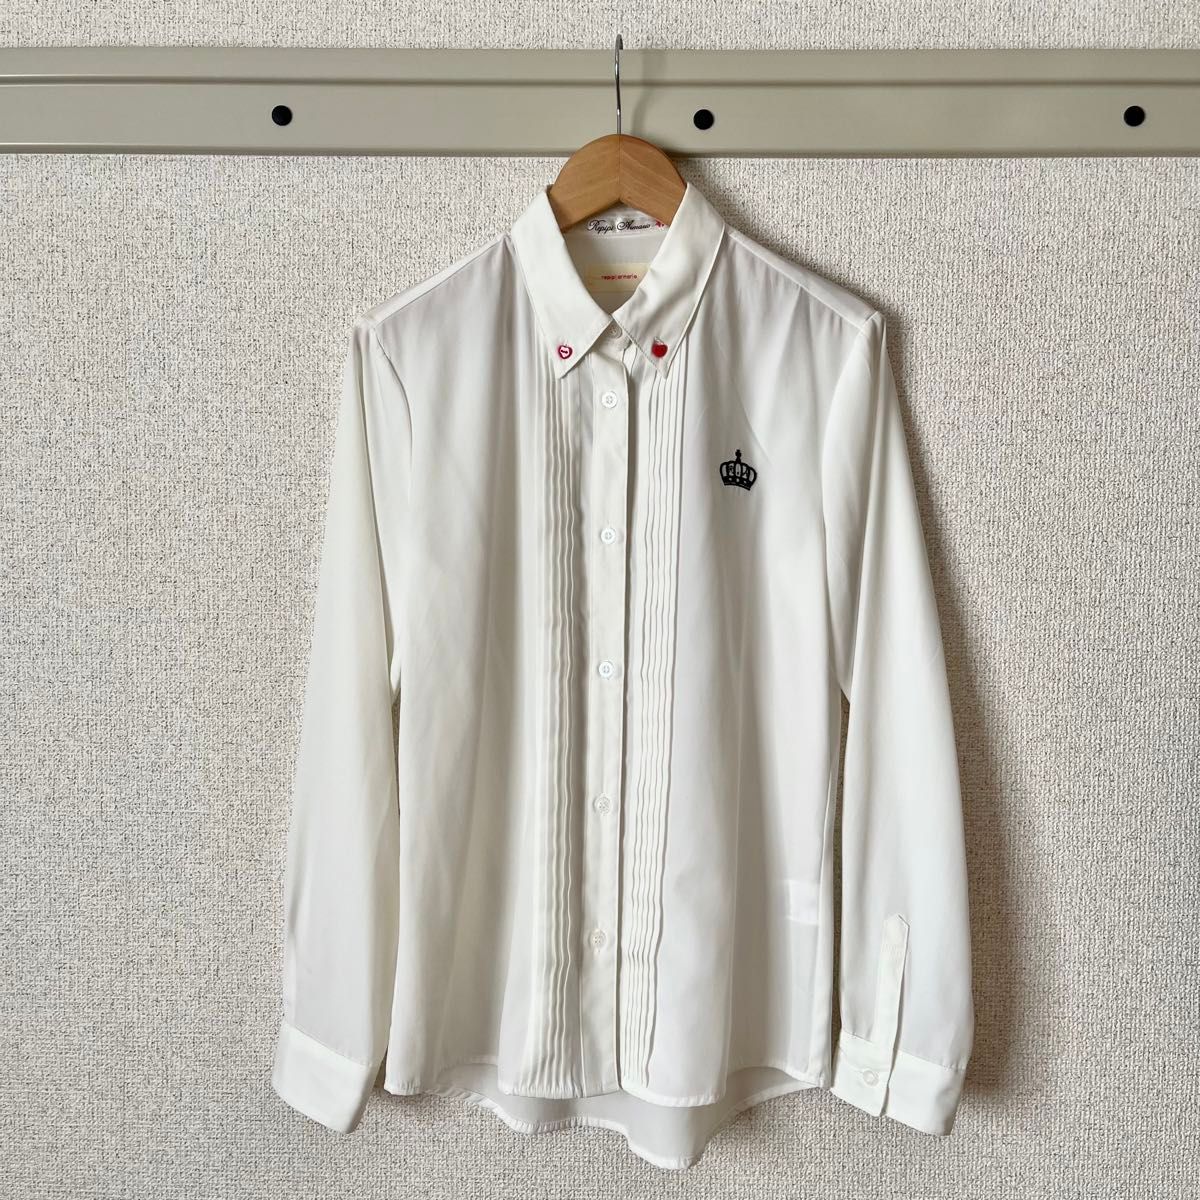 【即日発送】repipi armario 卒服 セットアップスーツ シャツ 3点セット サイズM/160 卒業式 フォーマル